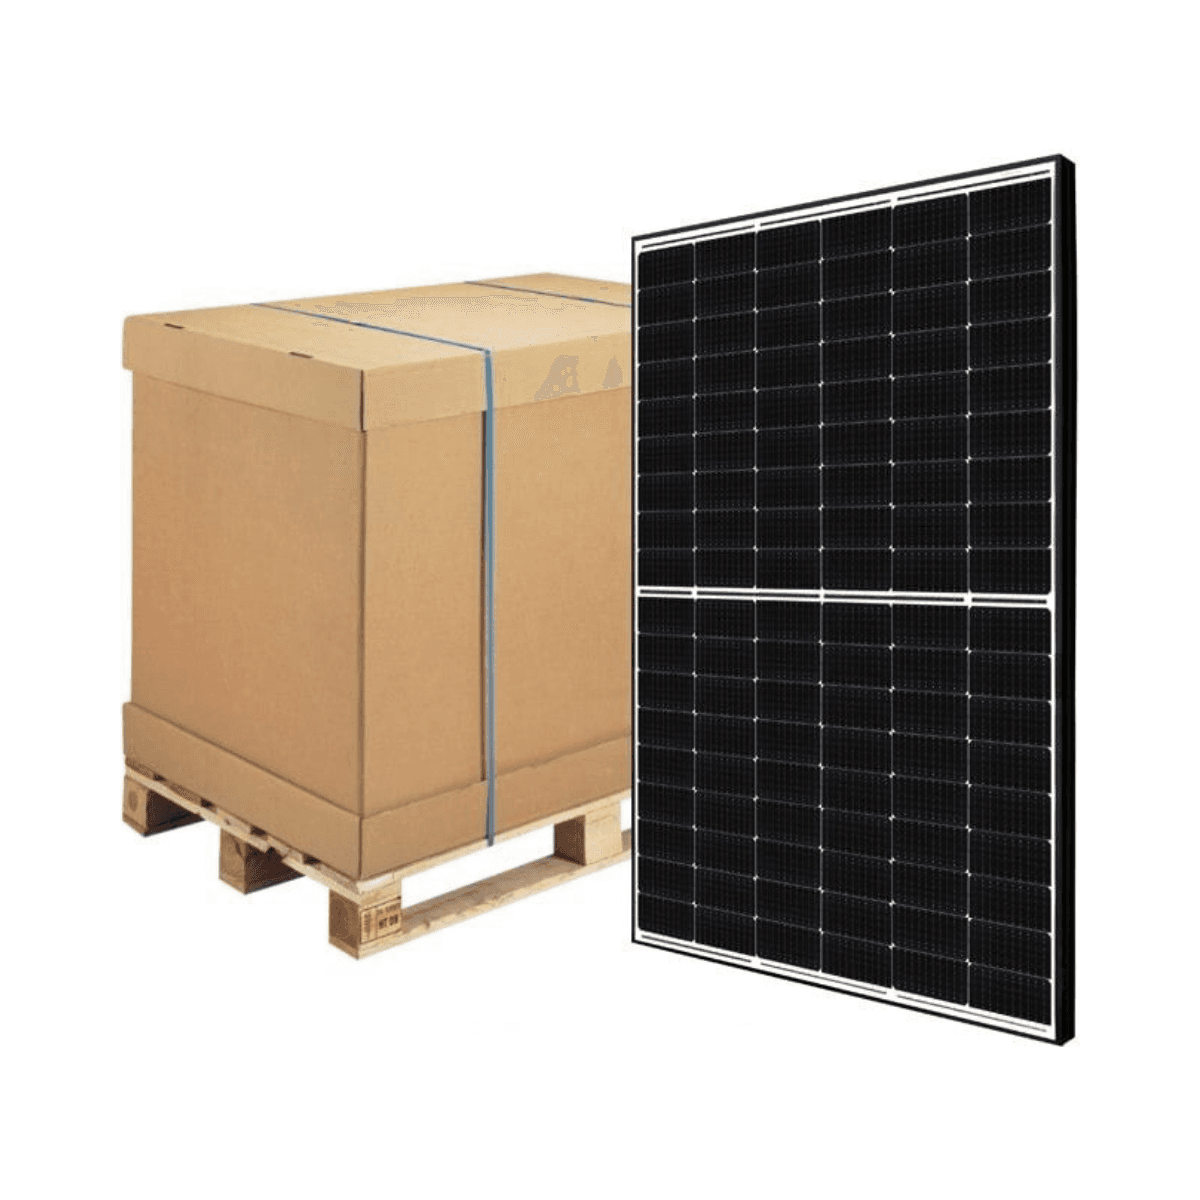 Pack 31 505W Longi HI-MO5m LR5-66HPH-505M Solarpanel mit der Referenz LR5-66HPH 505WP von der Marke LONGI